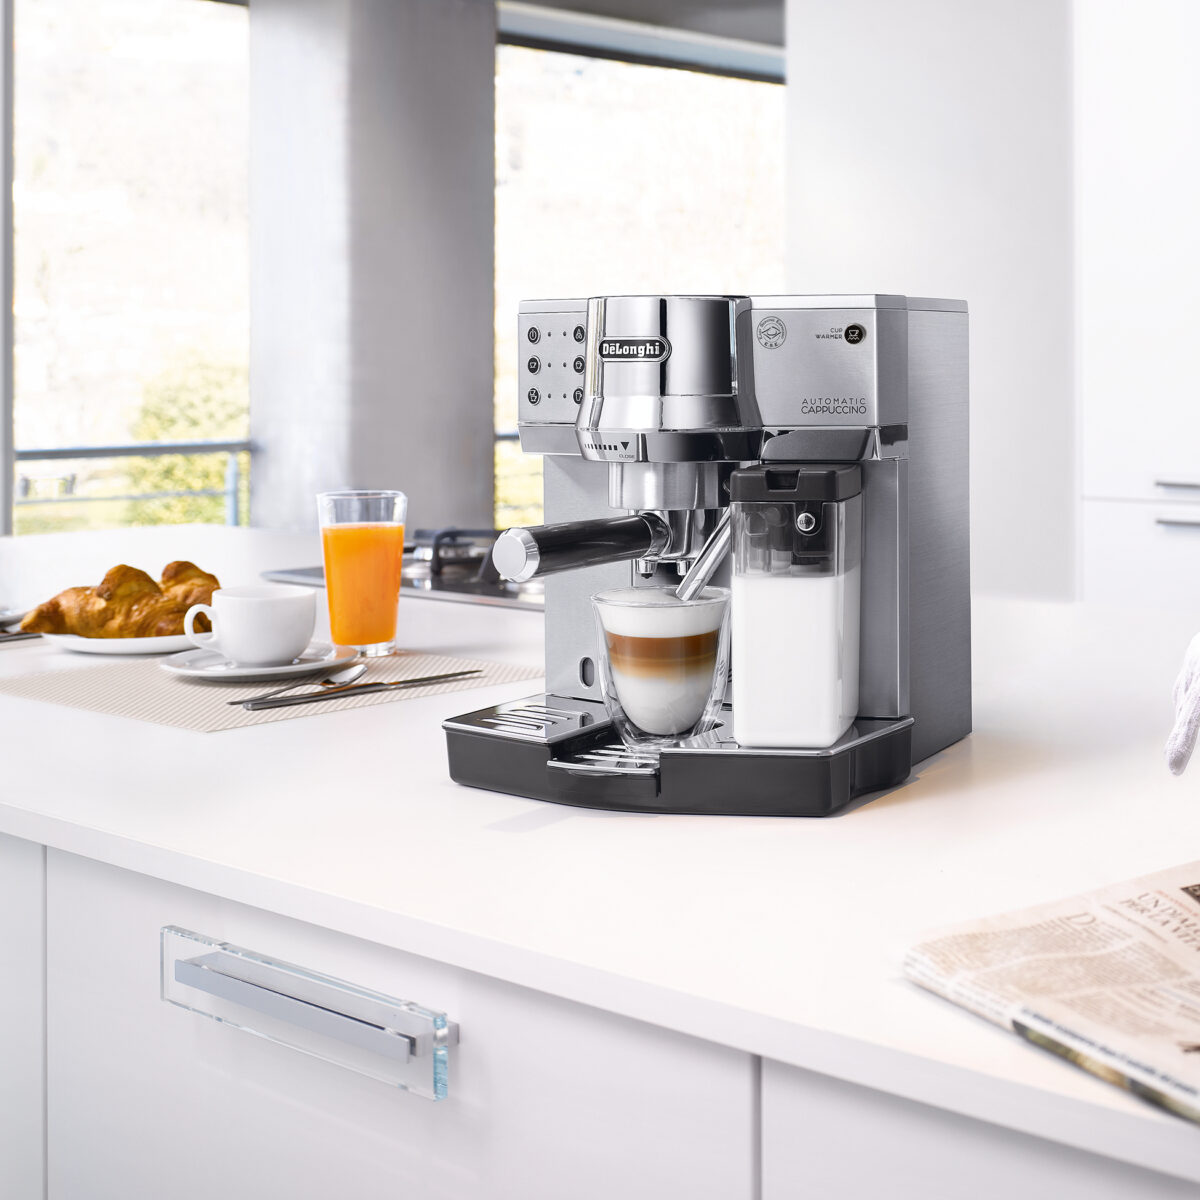 Cafetera Delonghi Semi-automática - Explora Café, Cápsulas de Café  Compatibles con Nespresso & Dolce Gusto, Café Molido, y demás